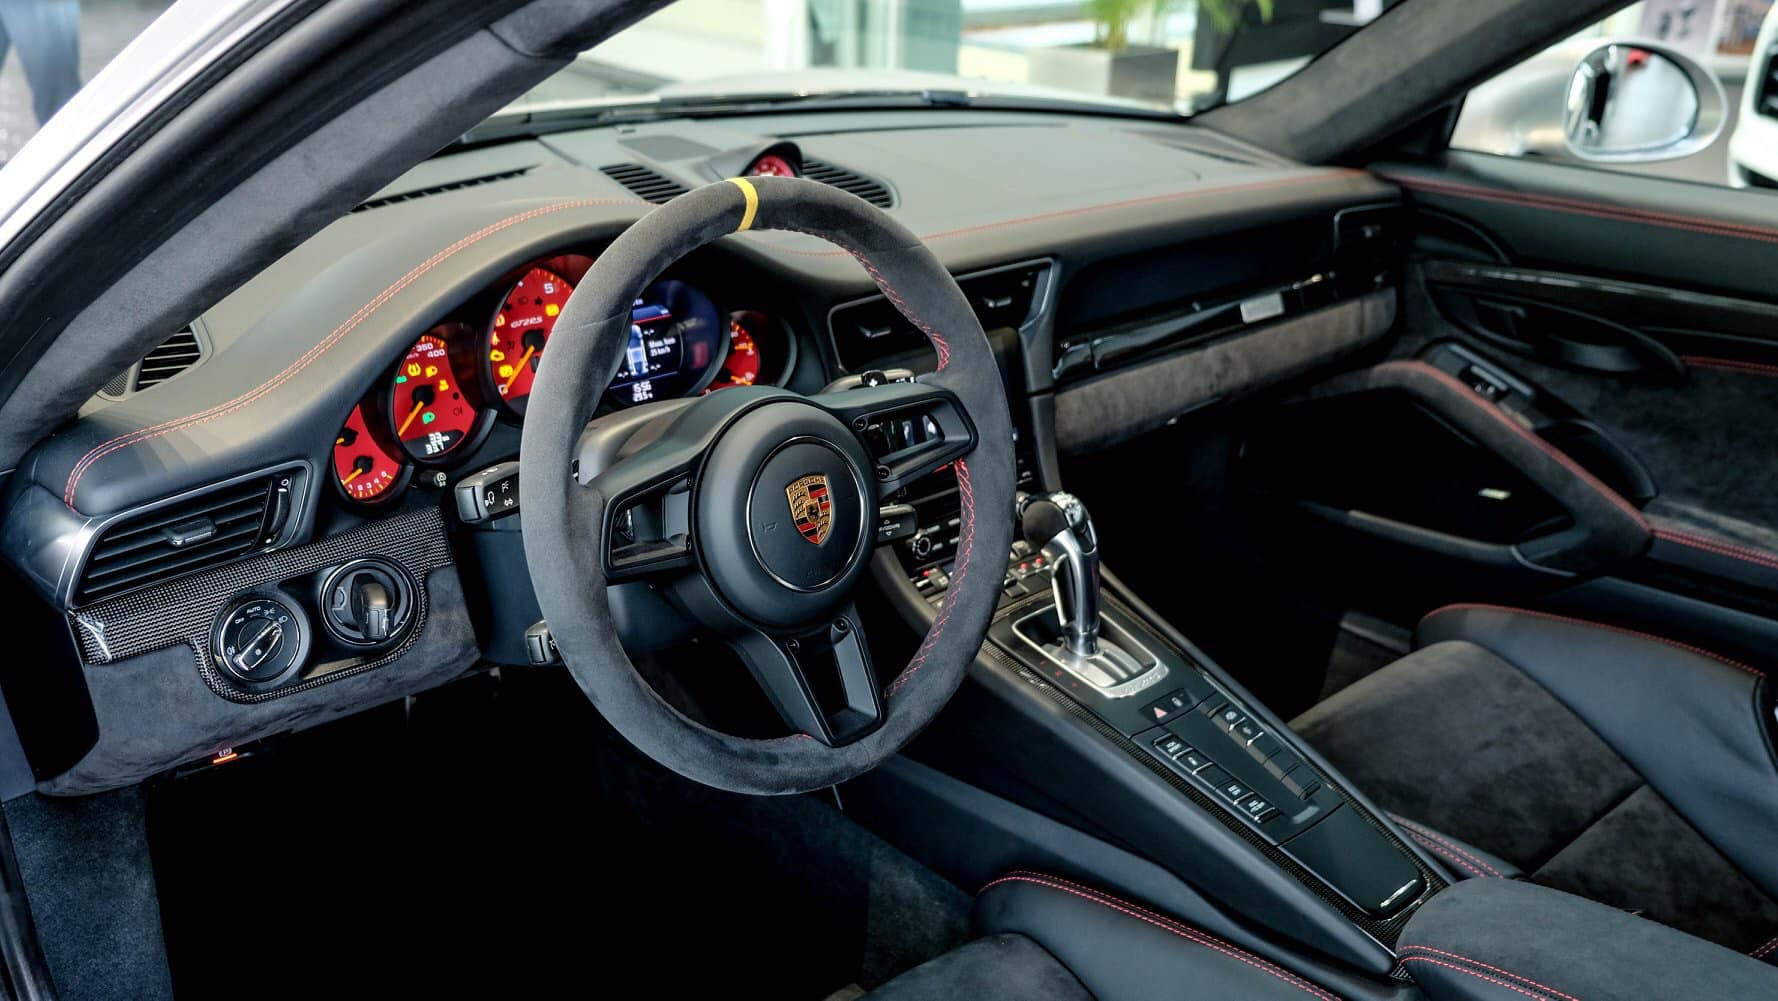 911 GT2 RS sử dụng hệ dẫn động cầu sau giúp xe đạt tốc độ tối đa là 340 km/h. Trang bị công nghệ truyền động gần với xe đua, ngoài ra, GT2 RS có hệ thống quản lý liên lạc của Porsche (PCM) là trung tâm kiểm soát âm thanh, định vị và thông tin. 